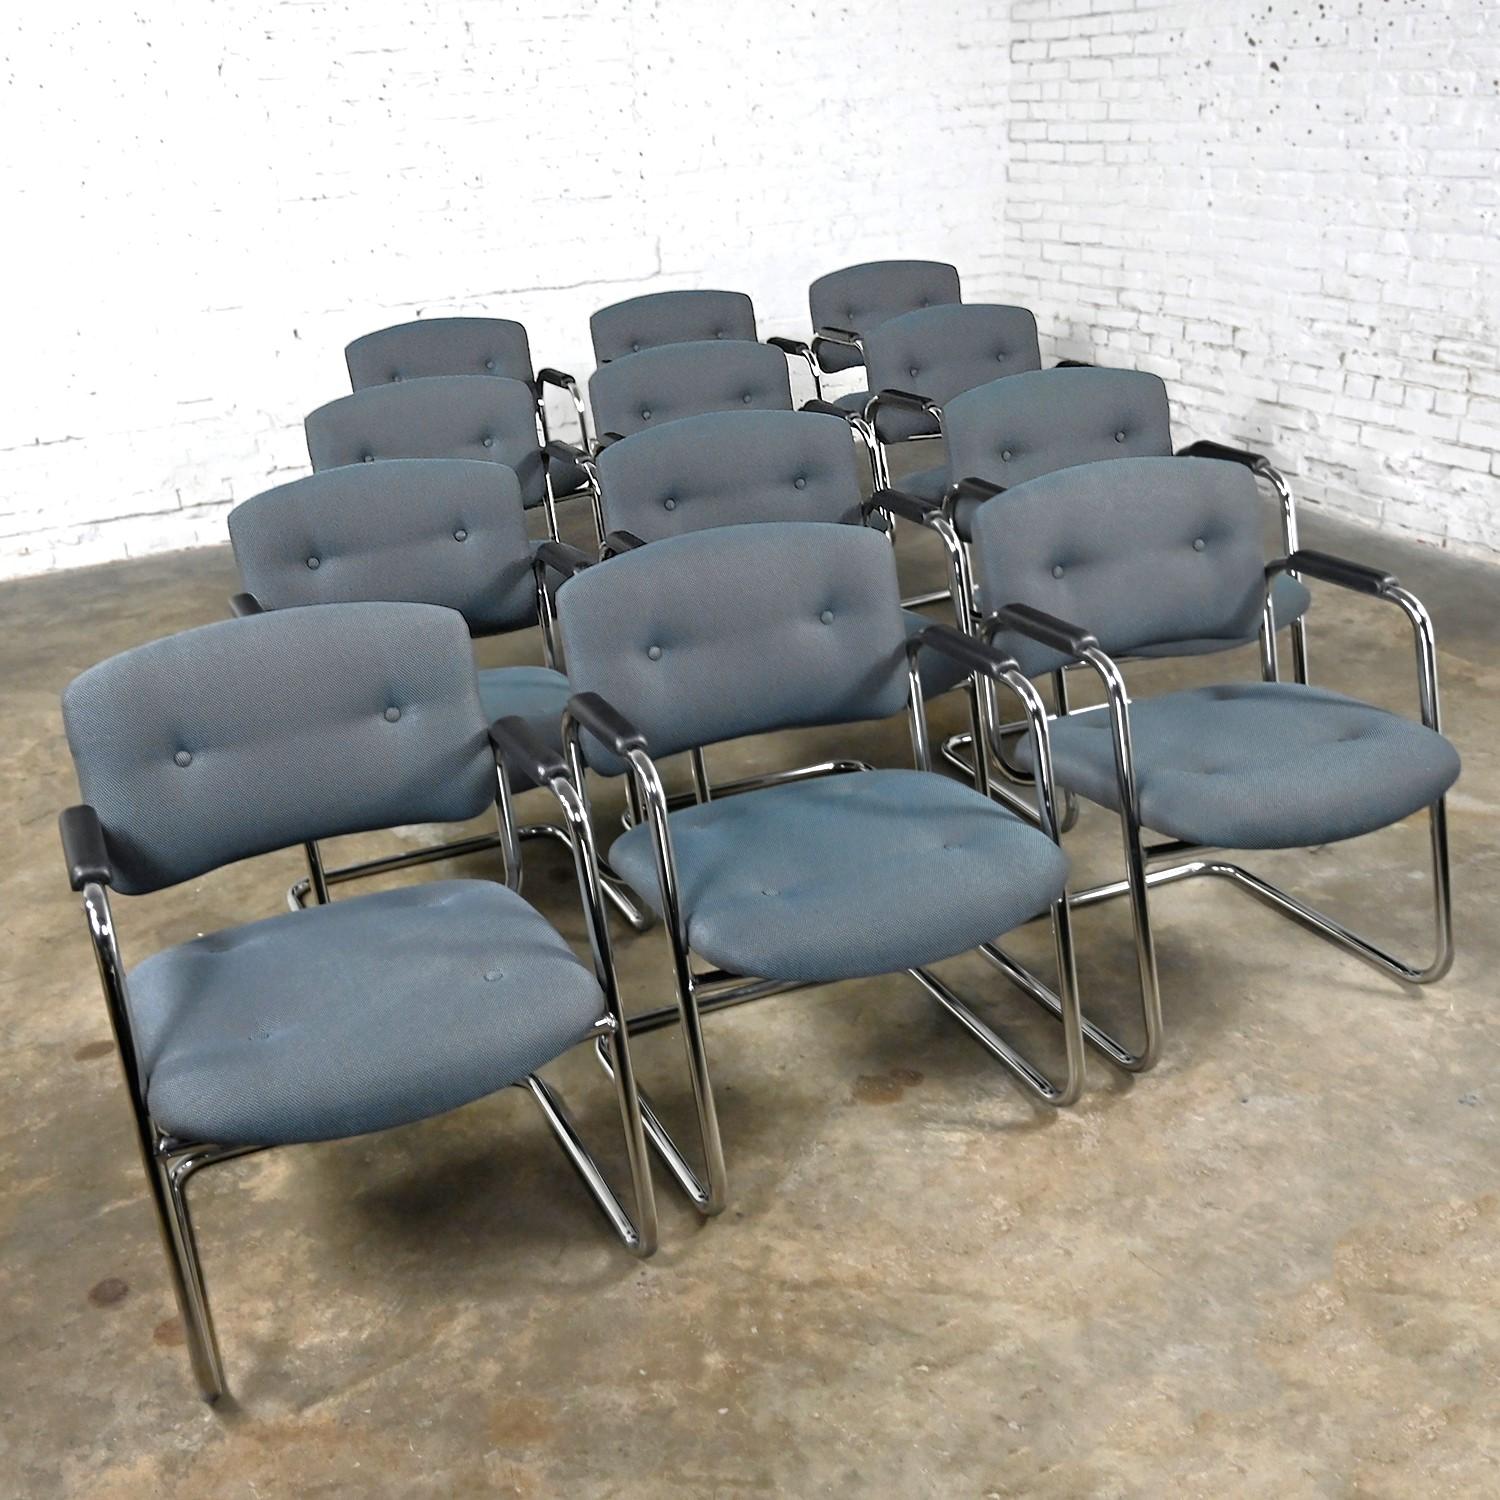 Superbes chaises cantilever vintage grises et chromées de United Chair Company dans le style de Steelcase, ensemble de 12. Composé d'une structure cantilever chromée, d'accoudoirs en plastique noir et de leur tissu tweed gris d'origine avec détails